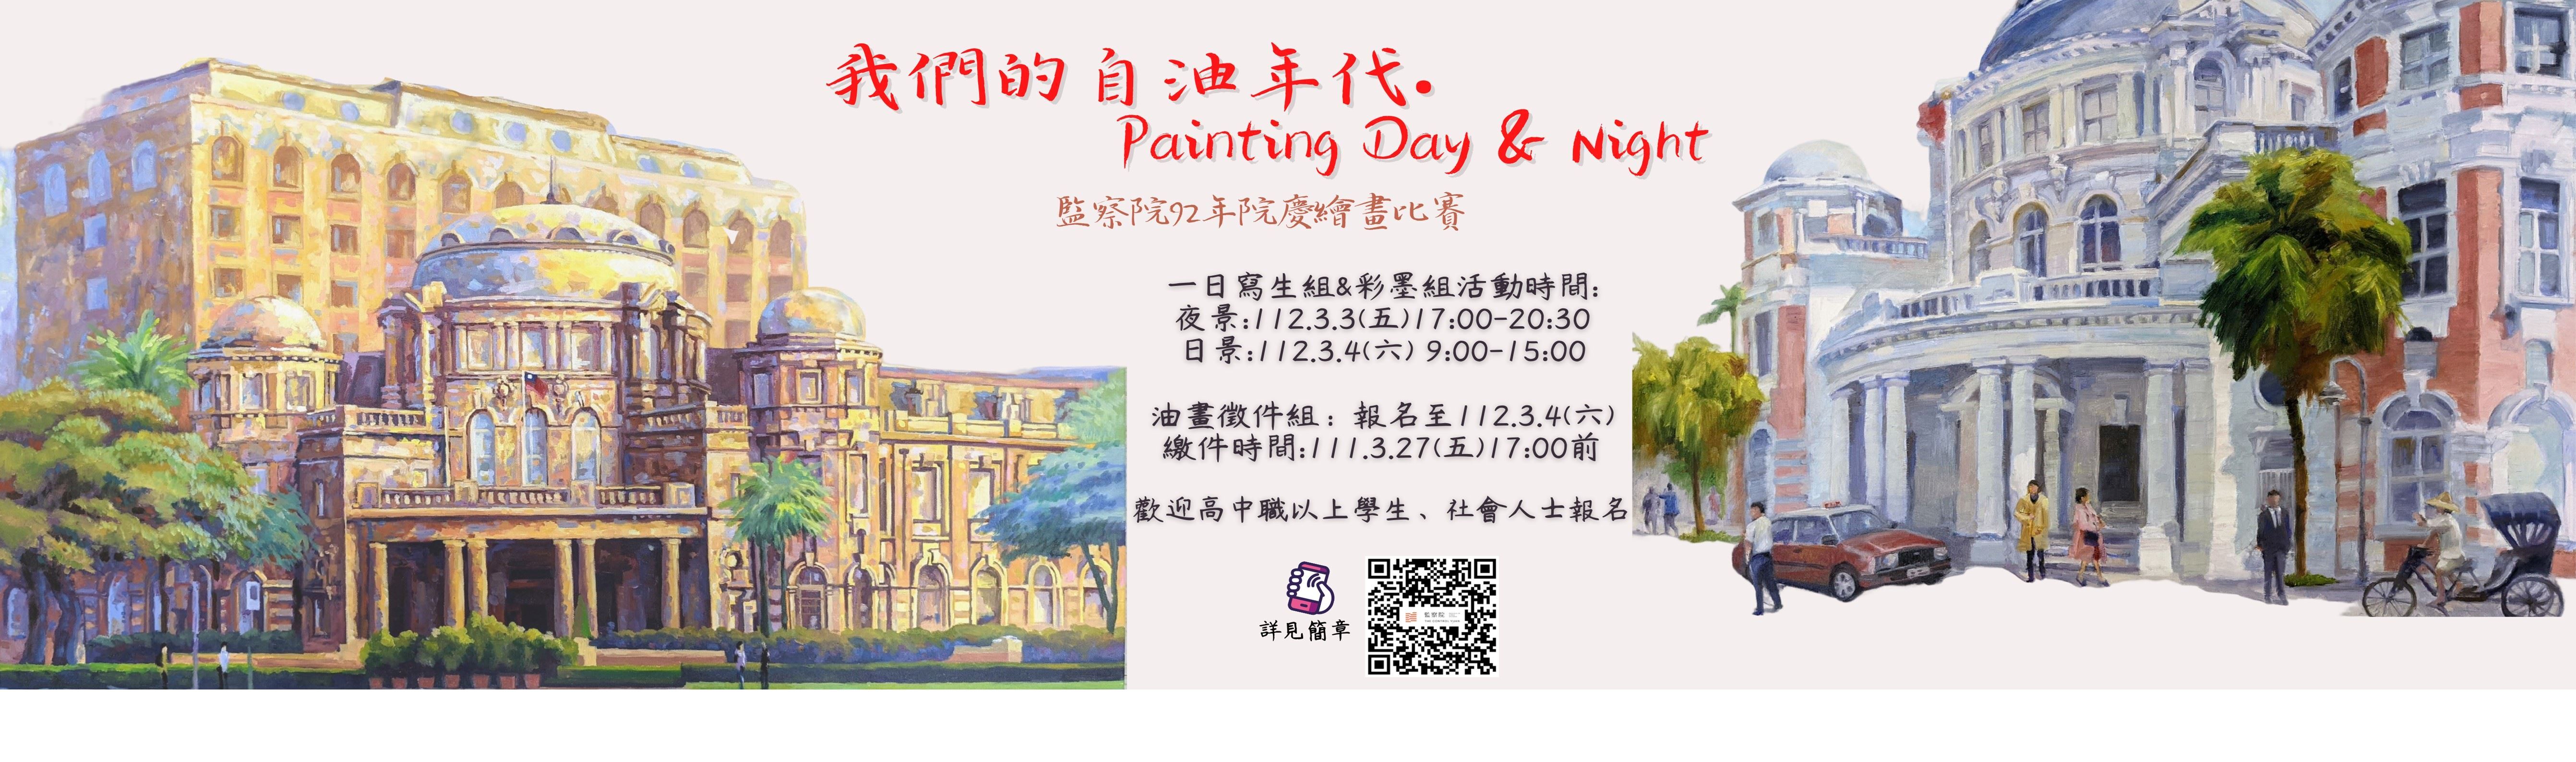 112年3月4日（星期六）前填妥報名表 監察院繪畫比賽「我們的自油年代‧Painting Day & Night」